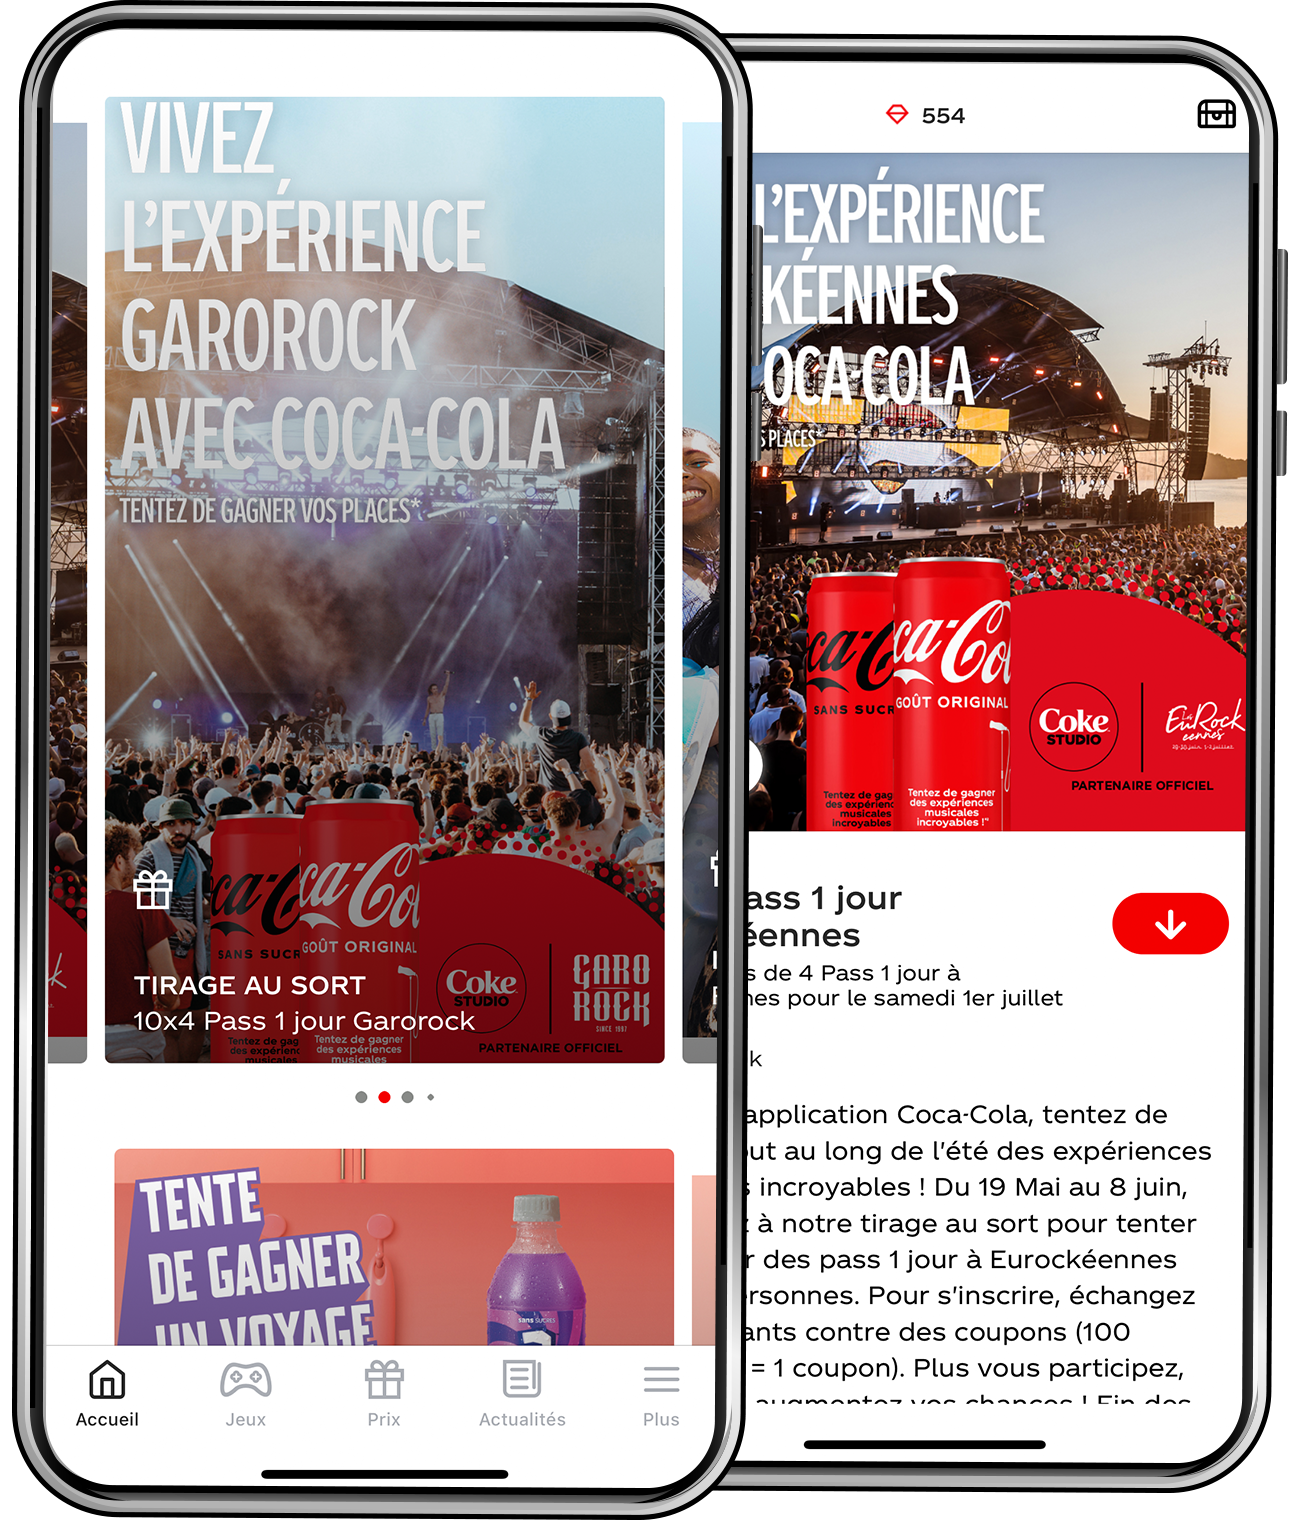 Coca-Cola Application - Vivez vos expériences musicales